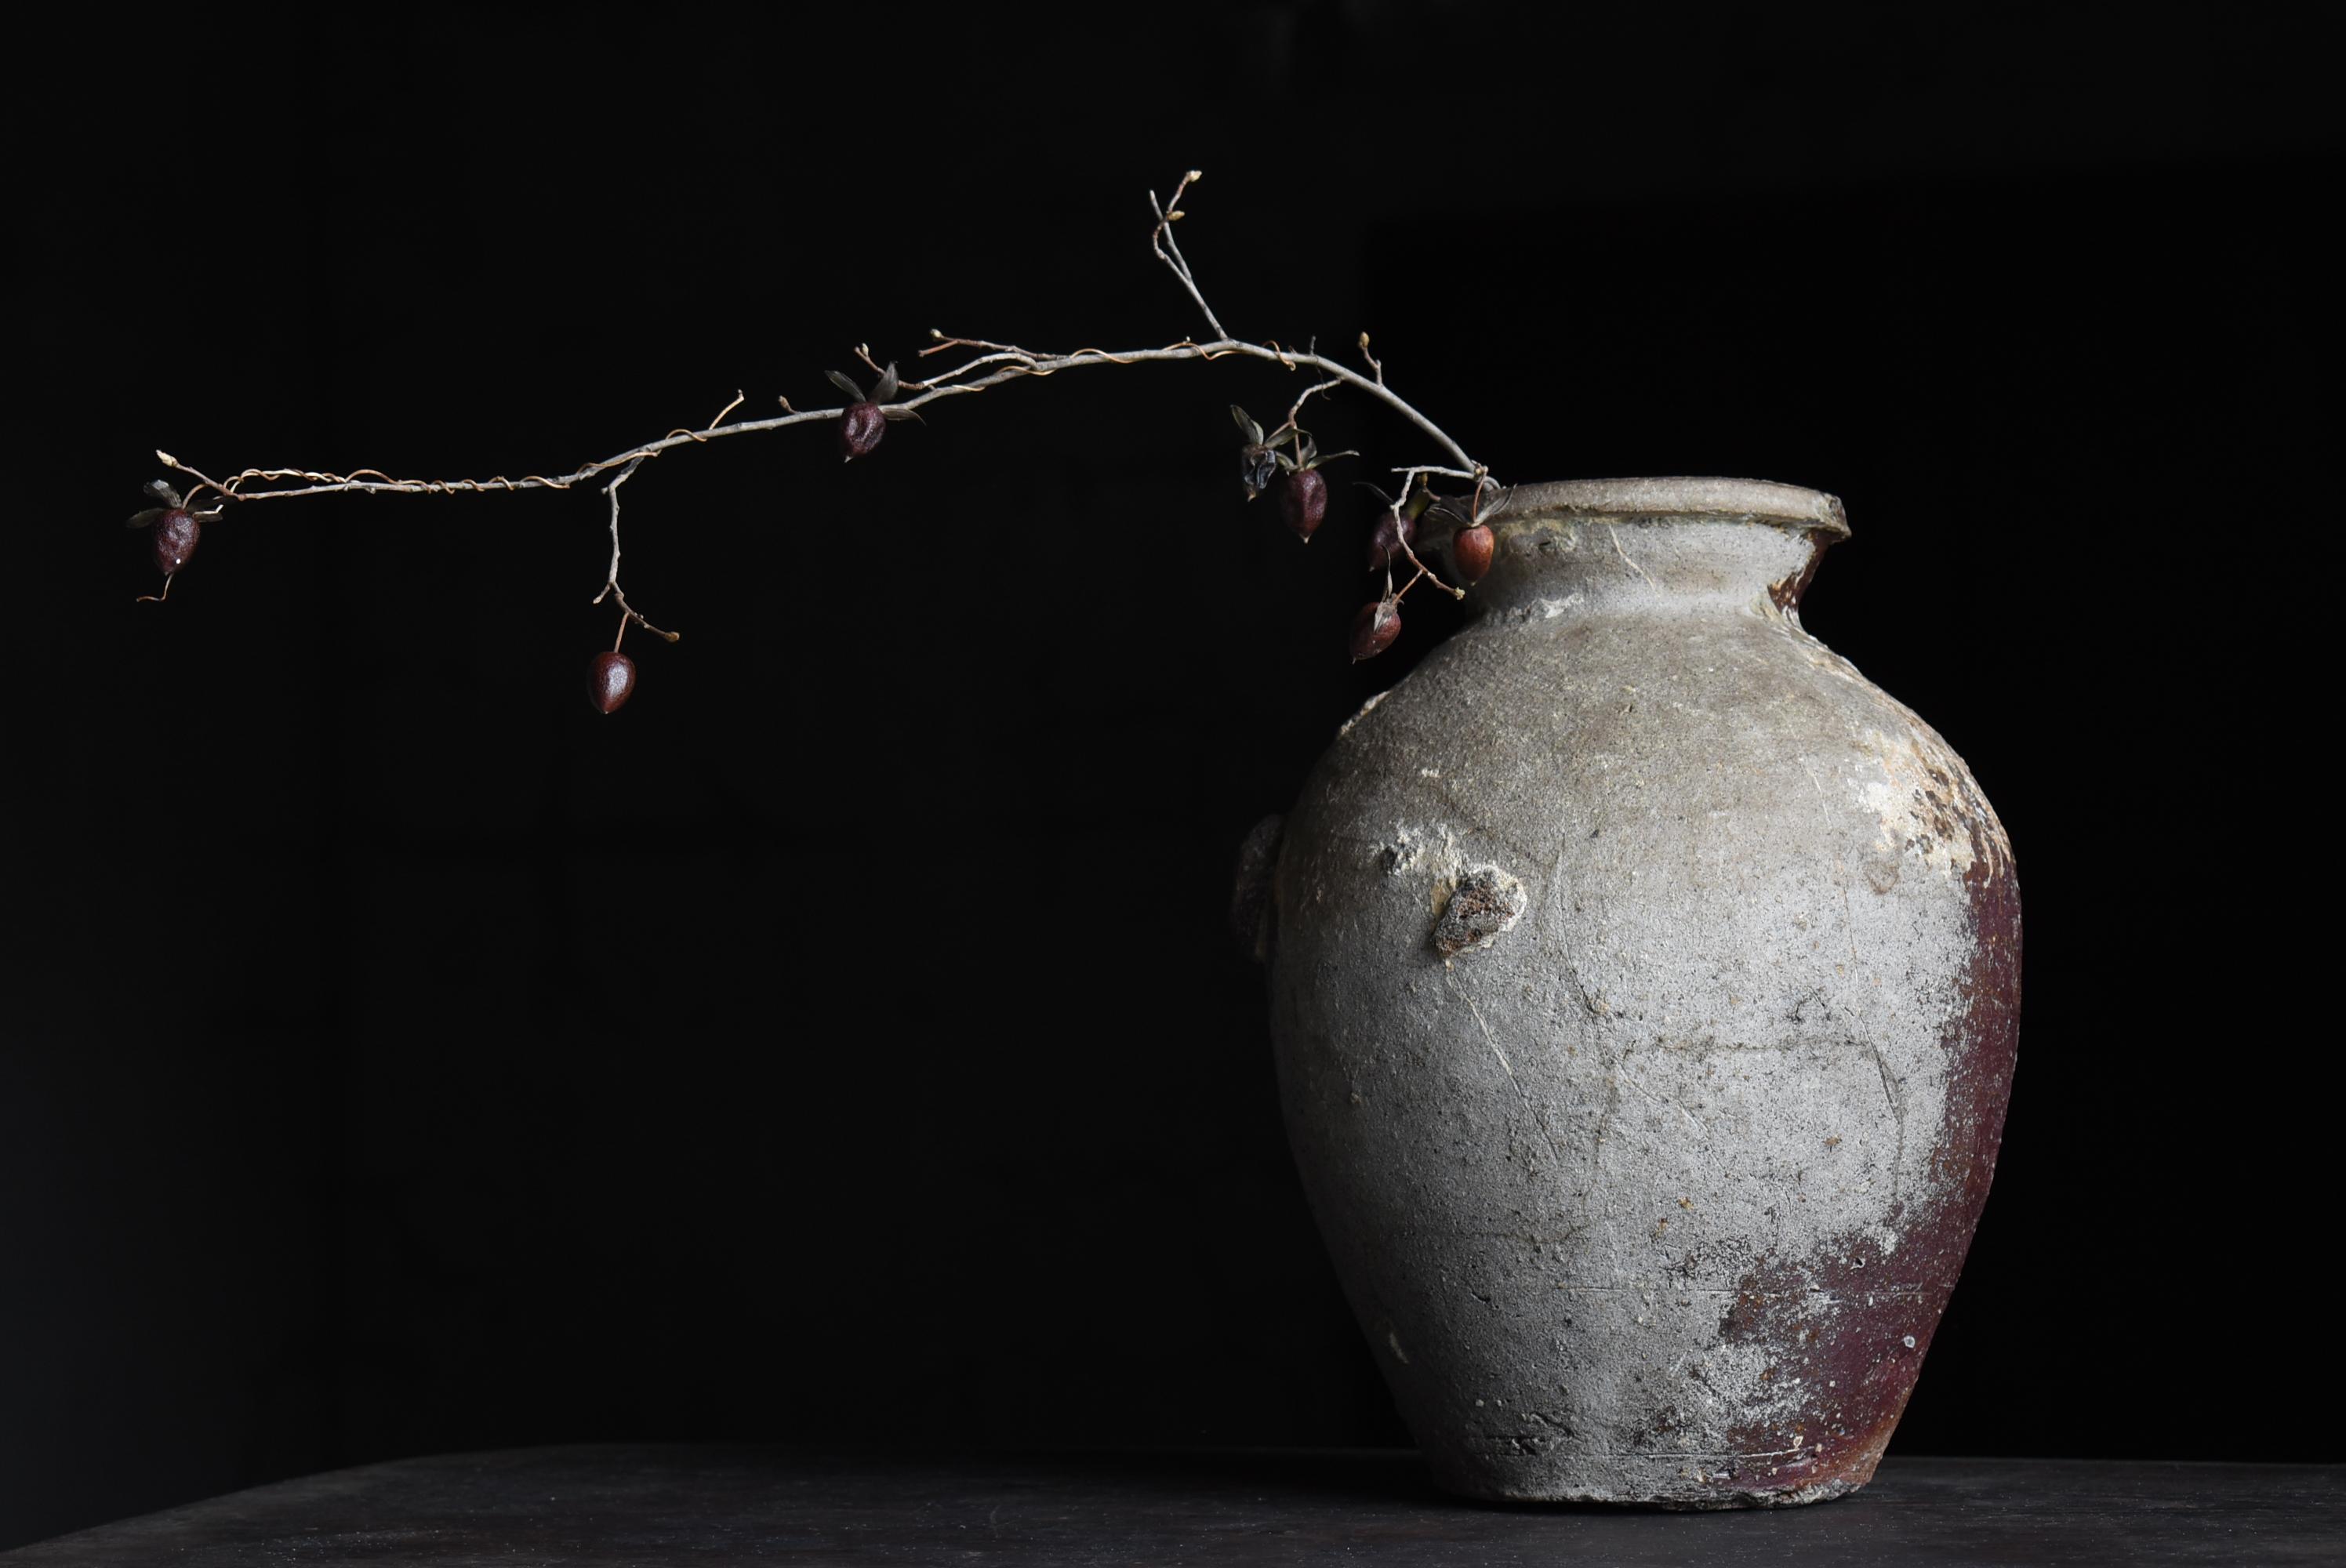 Other Japanese Antique Pottery Vase 14-16th Century / Flower Vase Wabi Sabi